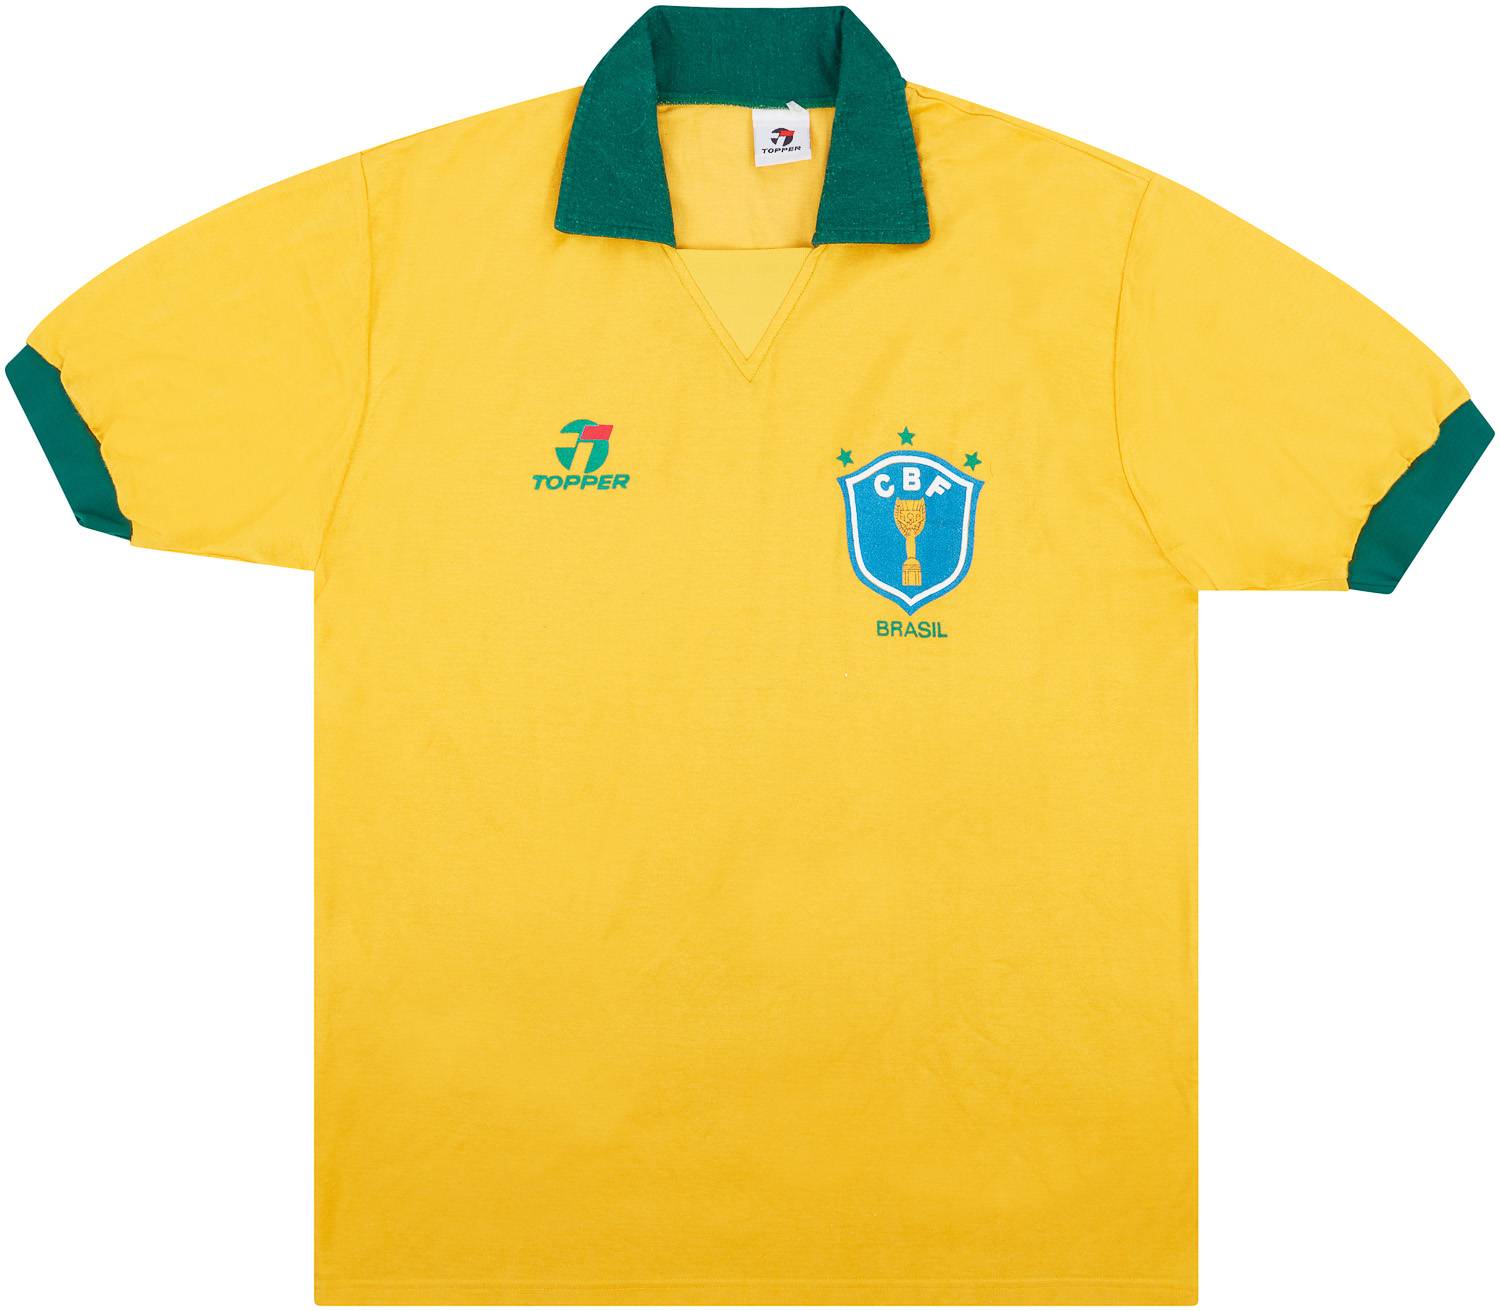 1990 Brazil Home Shirt - 8/10 - S